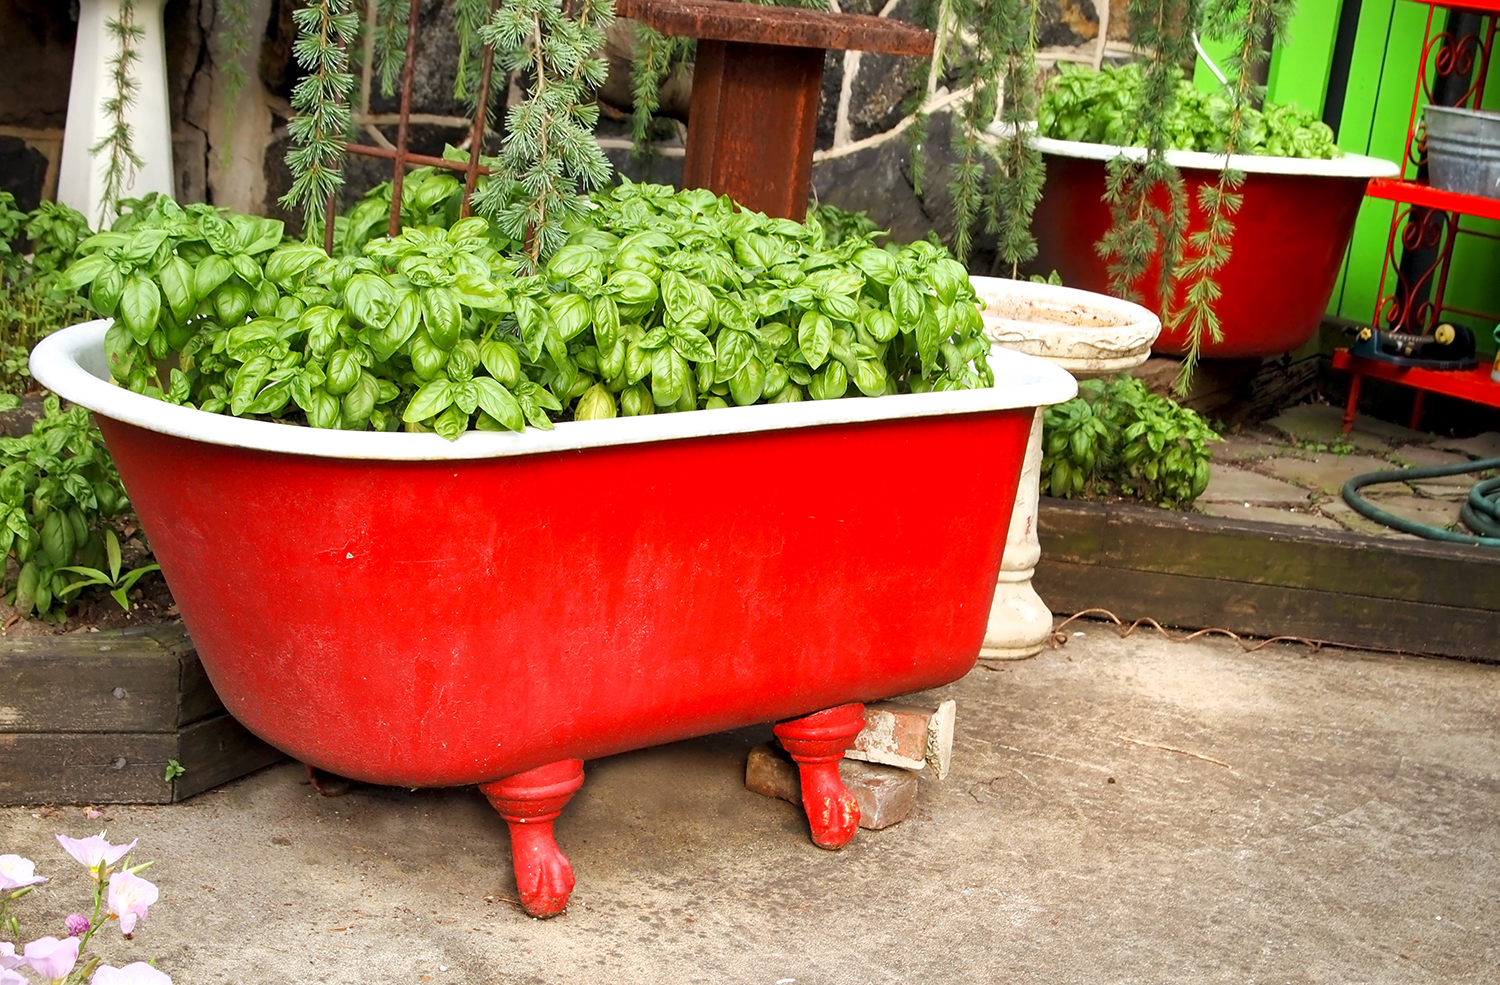 Basil in a Red Bathtub